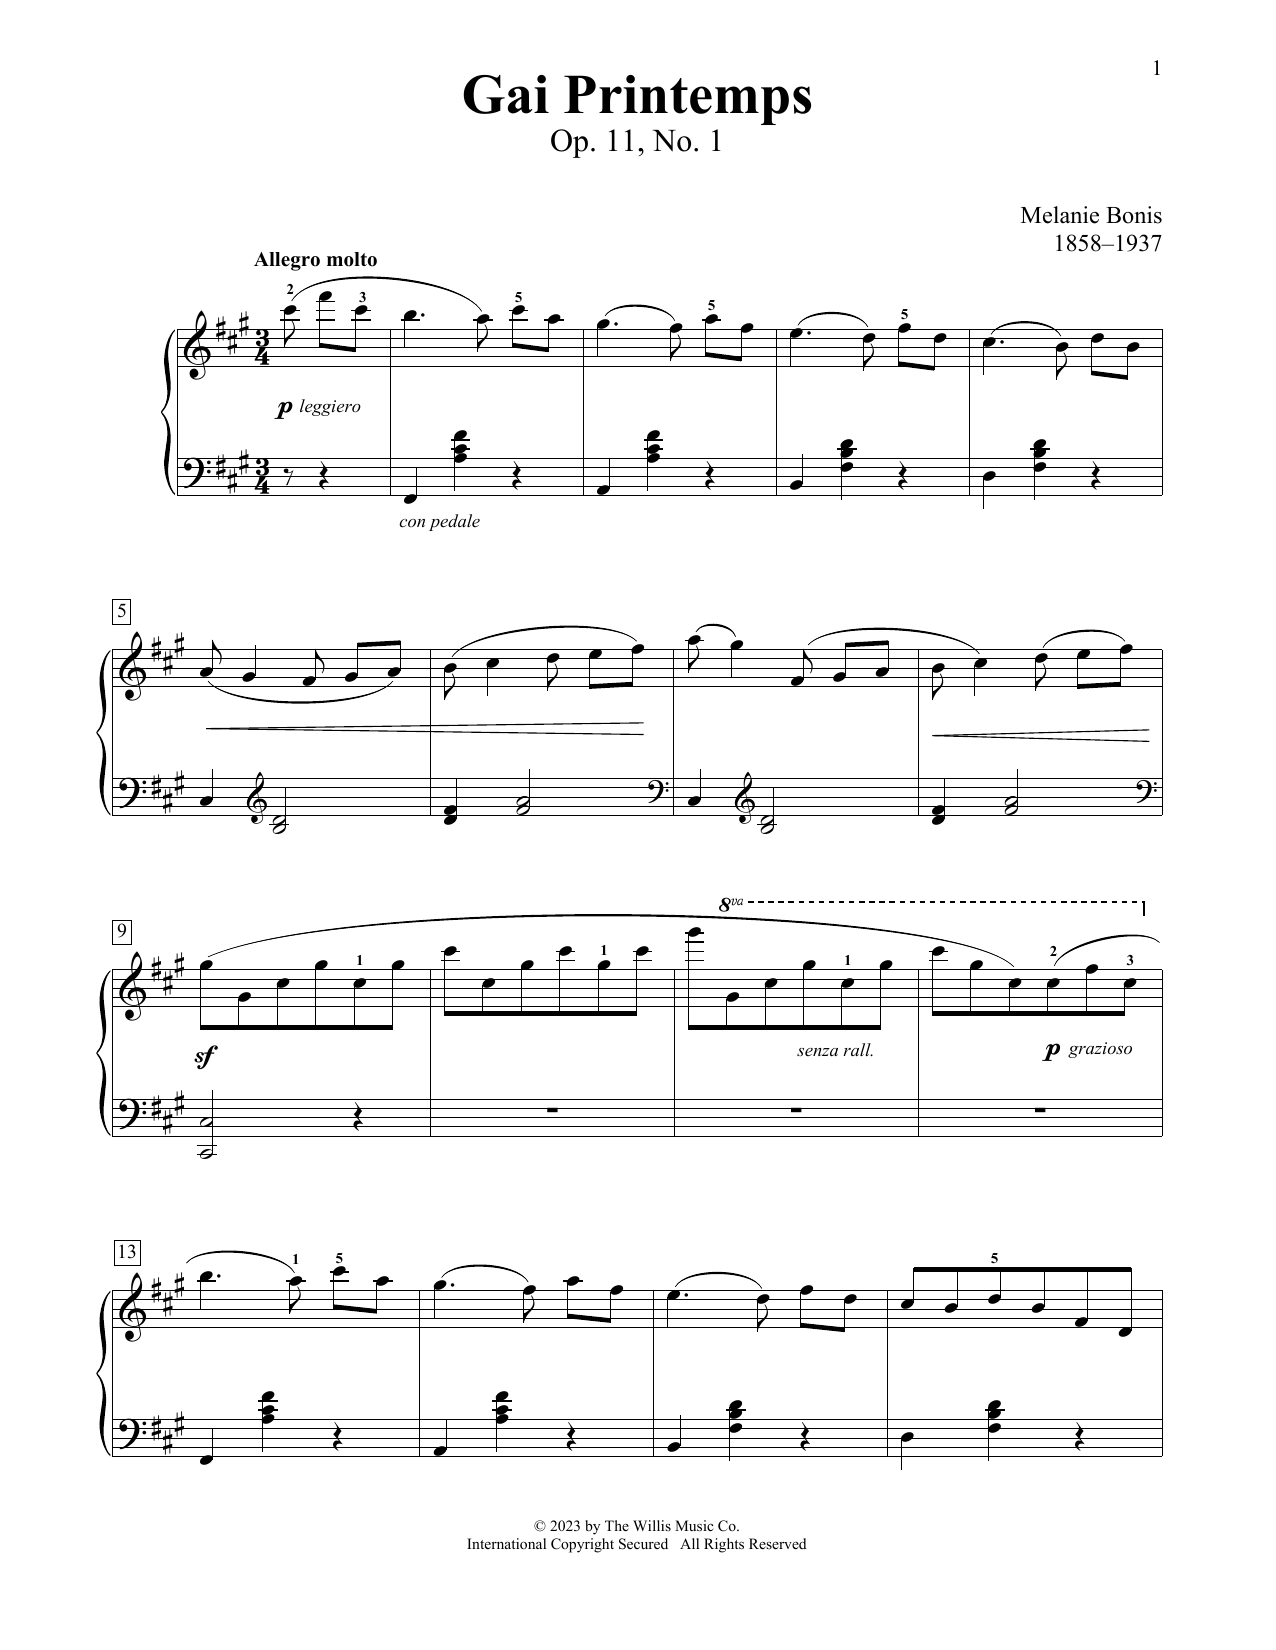 Mel Bonis Gai Printemps, Op. 11, No. 1 sheet music notes printable PDF score